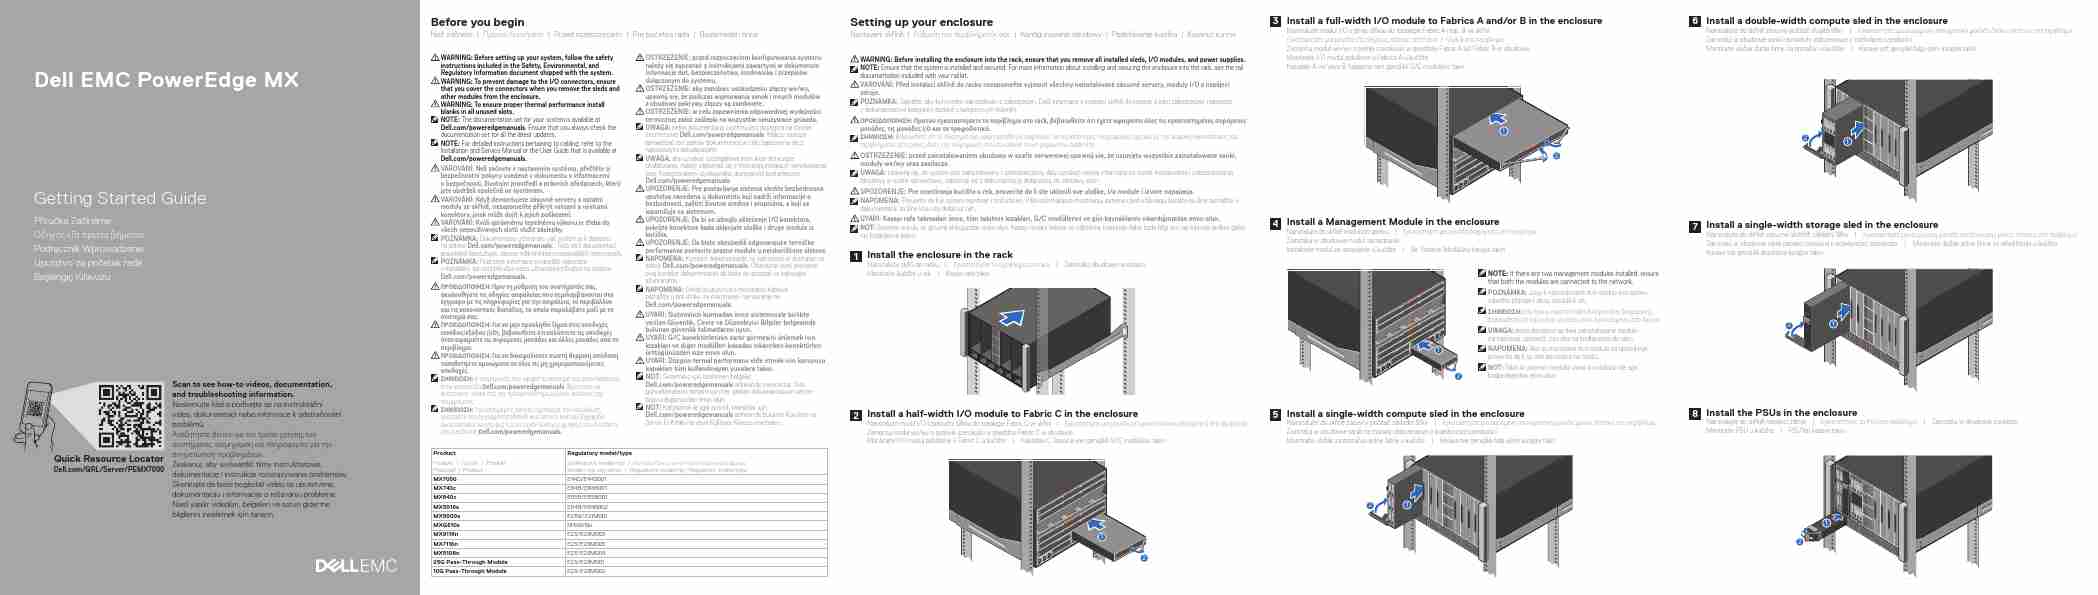 DELL EMC POWEREDGE MX9116N-page_pdf